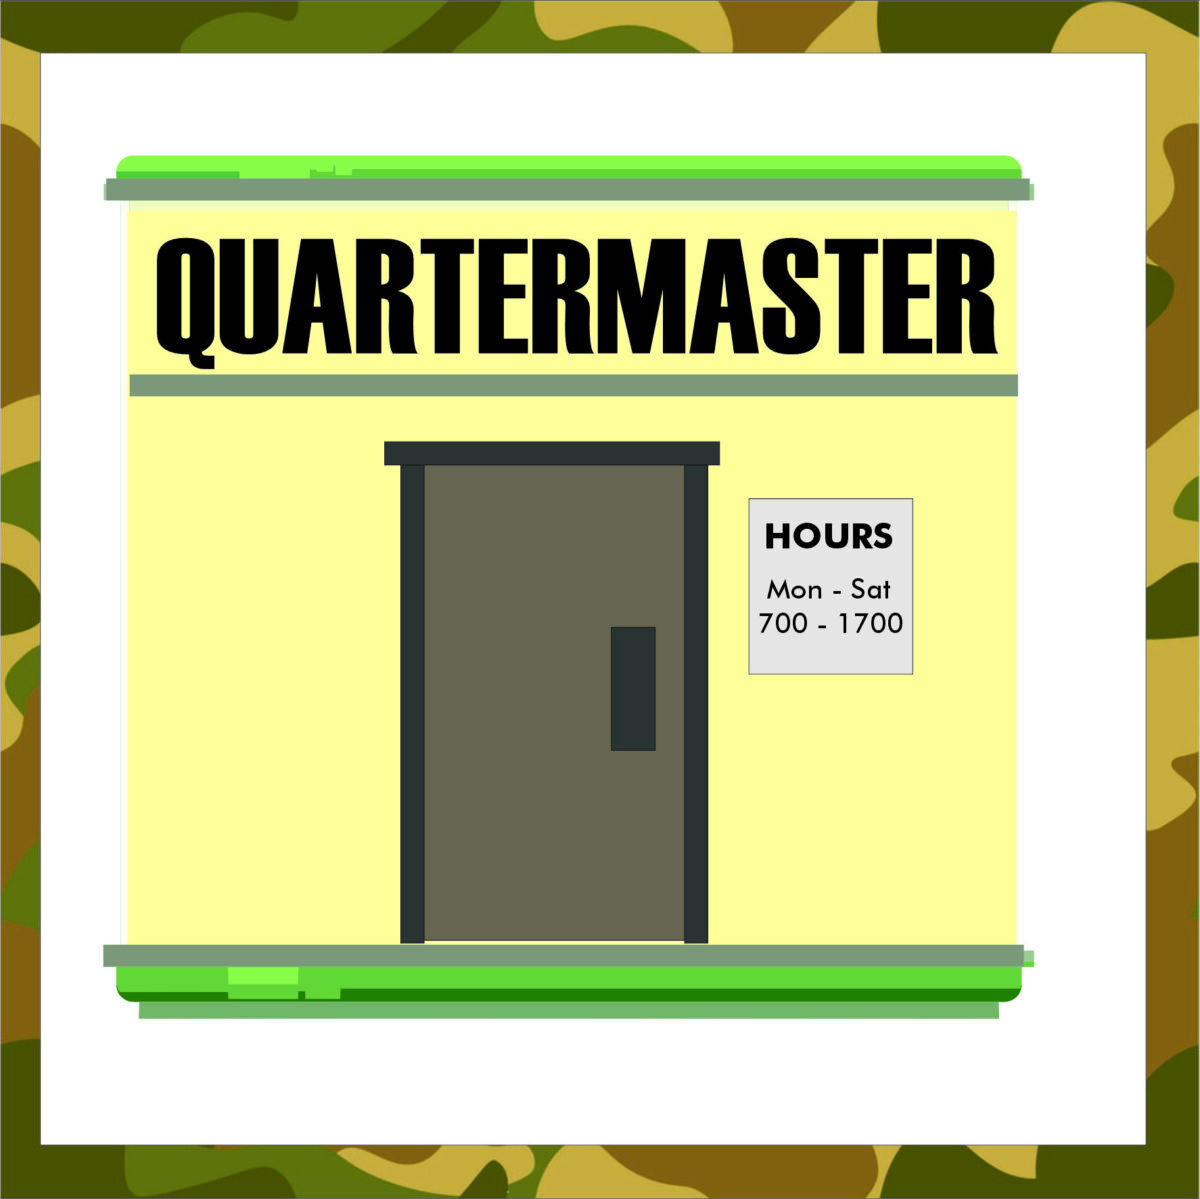 The Quartermaster’s Store